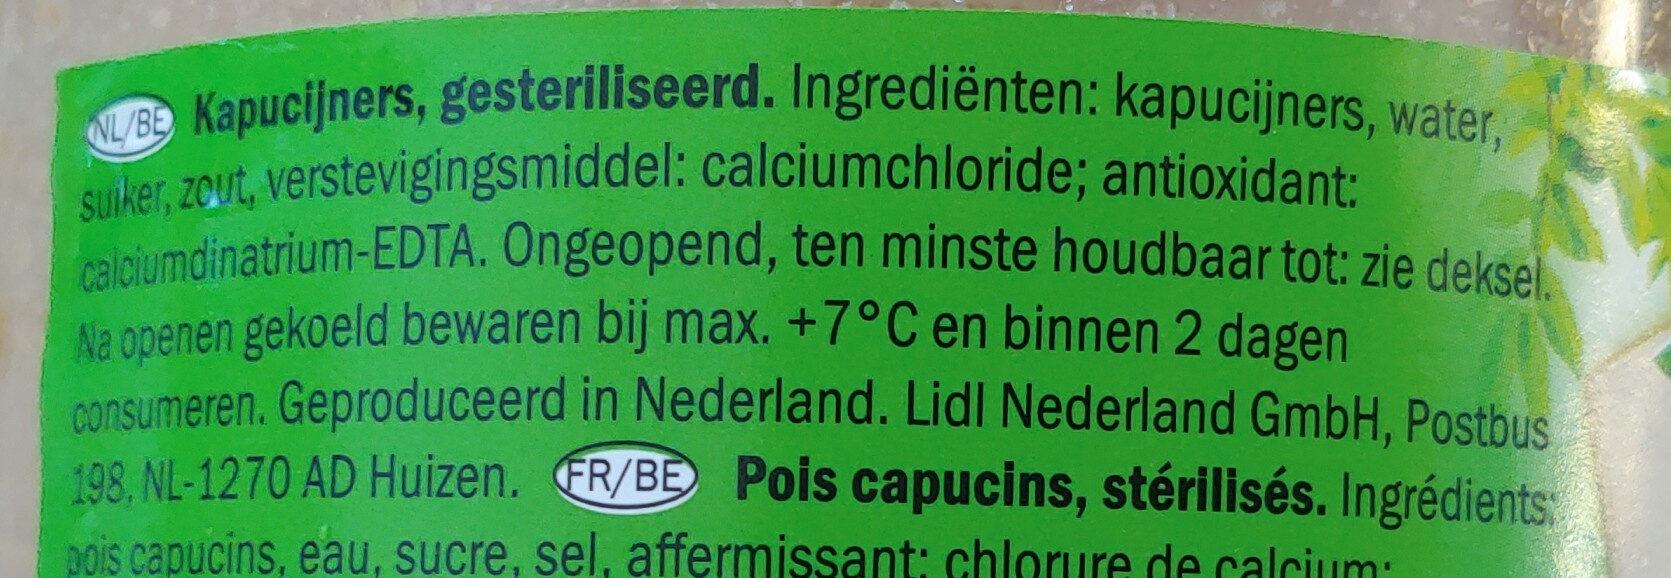 kapucijners - Ingredients - nl